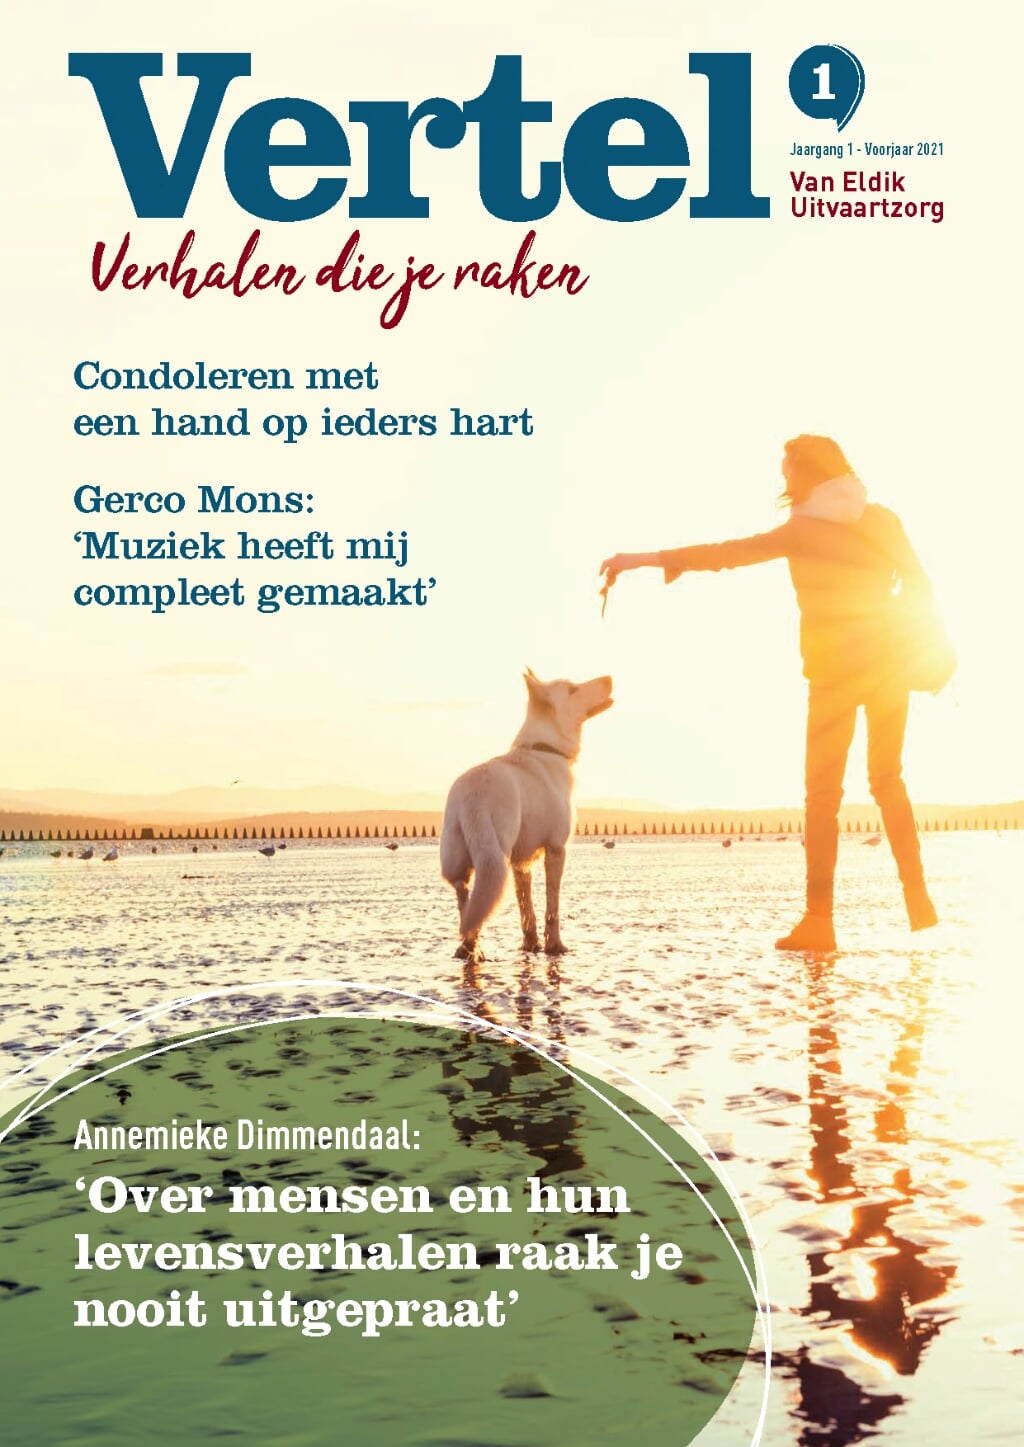 De cover van het magazine. Beeld: DeSchepperenCo.nl